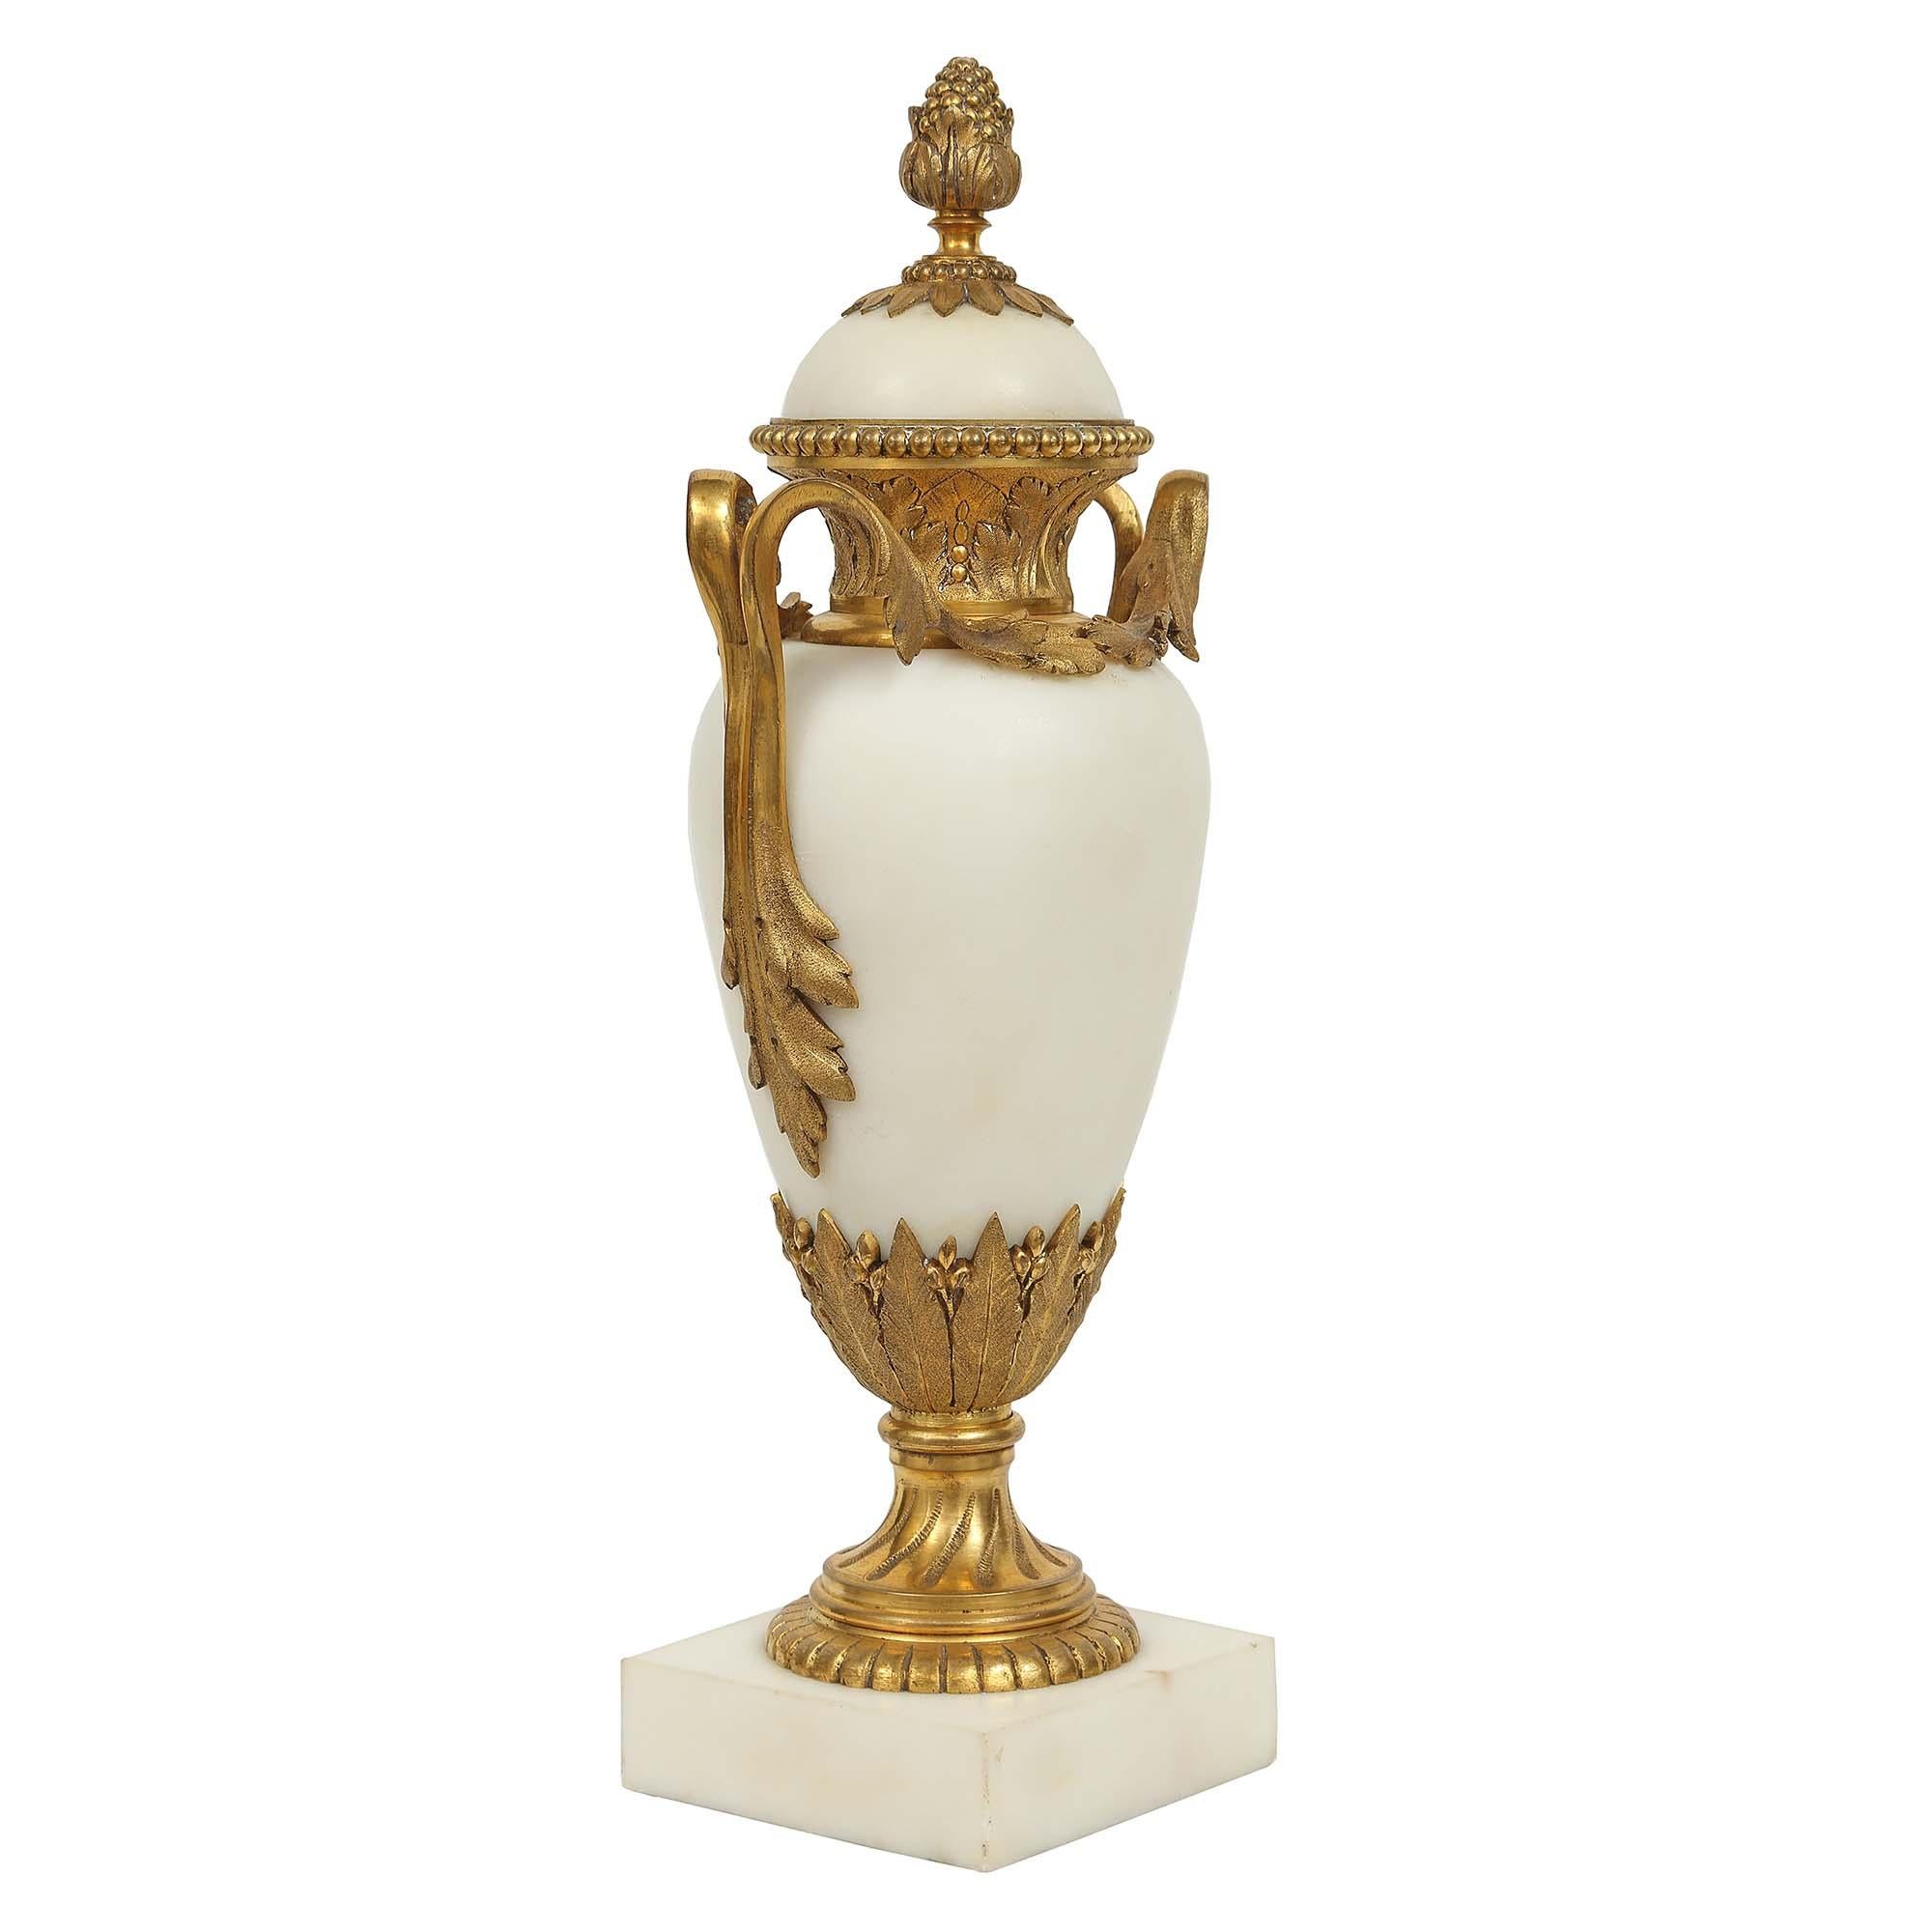 Une très belle paire de cassolettes françaises du 19ème siècle, de style Louis XVI, en marbre blanc de Carrare et bronze doré, avec toutes les dorures d'origine. La paire est surélevée par une épaisse base en marbre de forme carrée. Au-dessus se